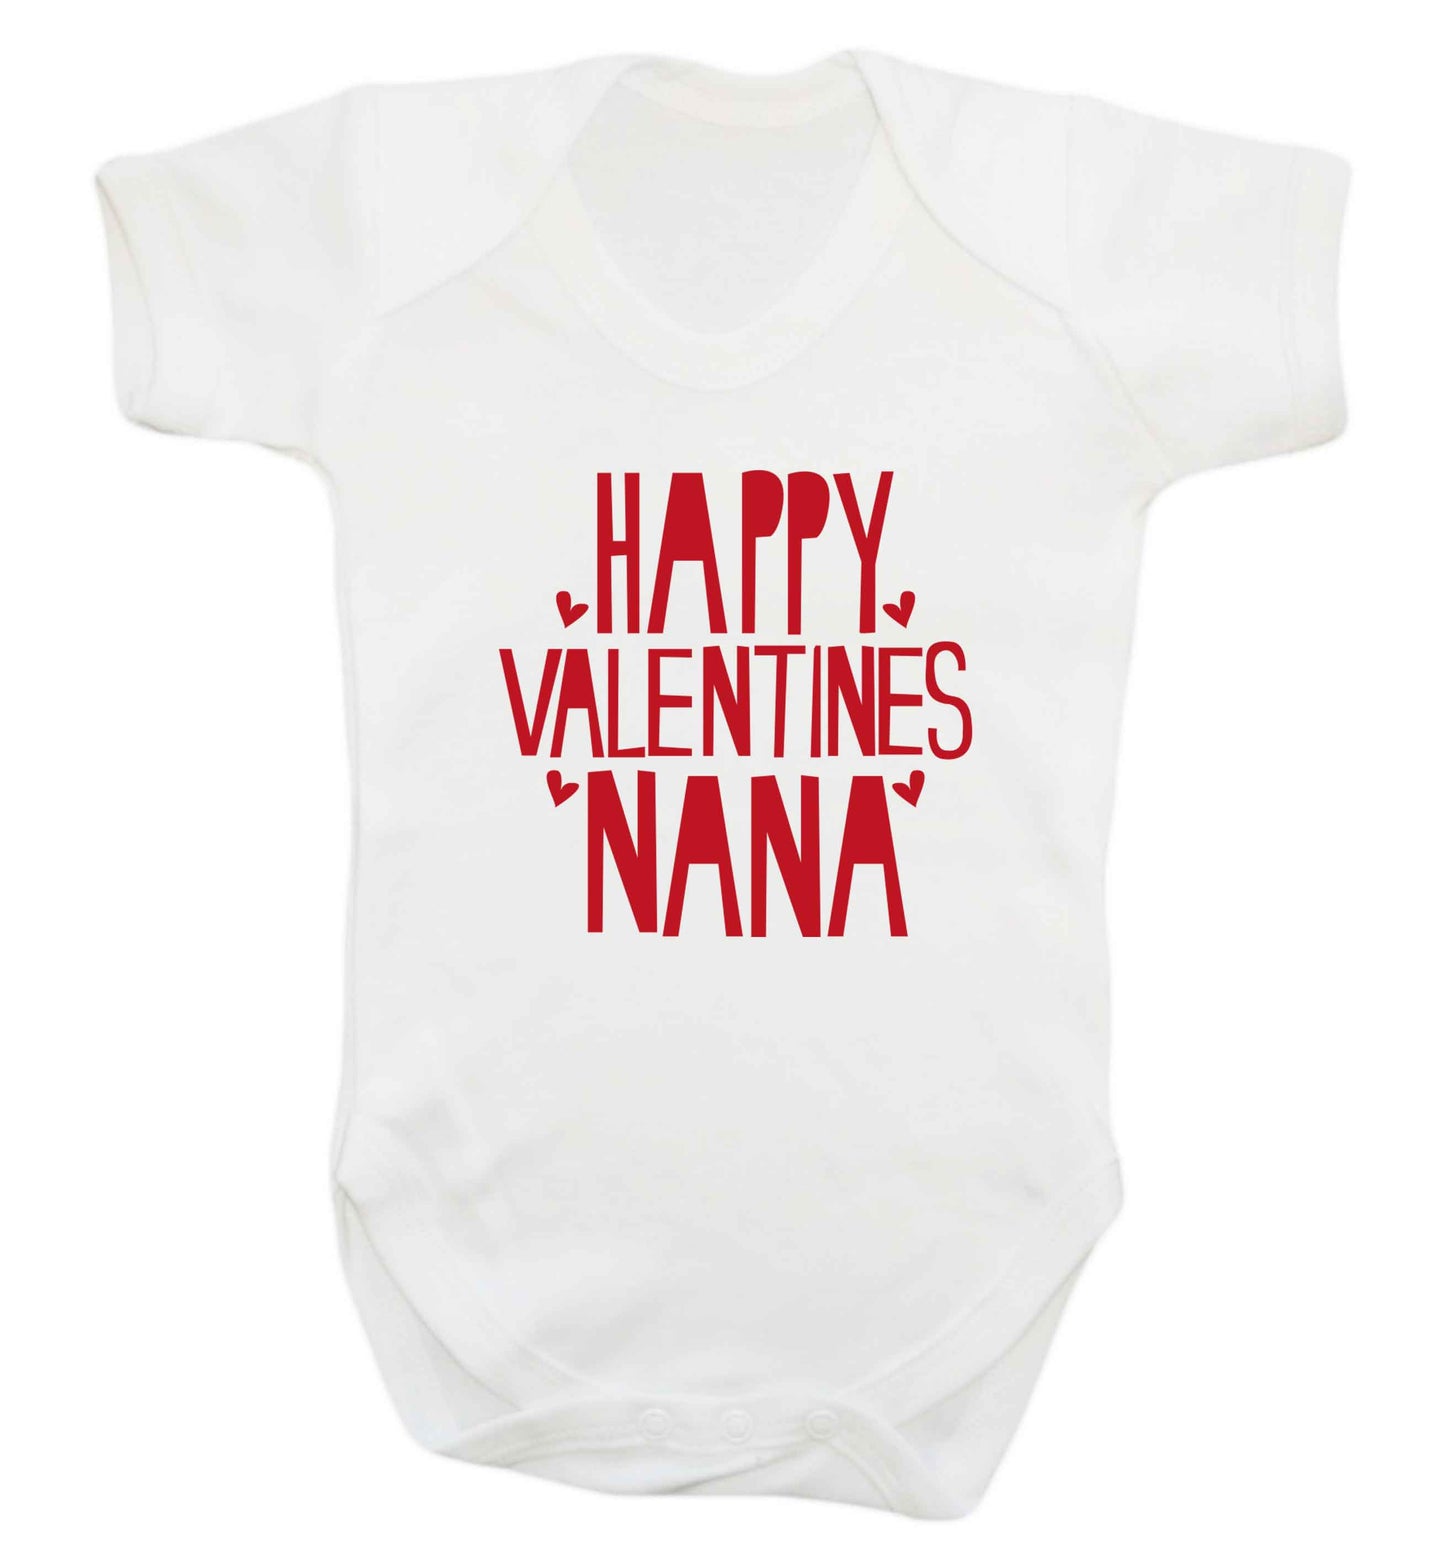 Happy valentines nana baby vest white 18-24 months